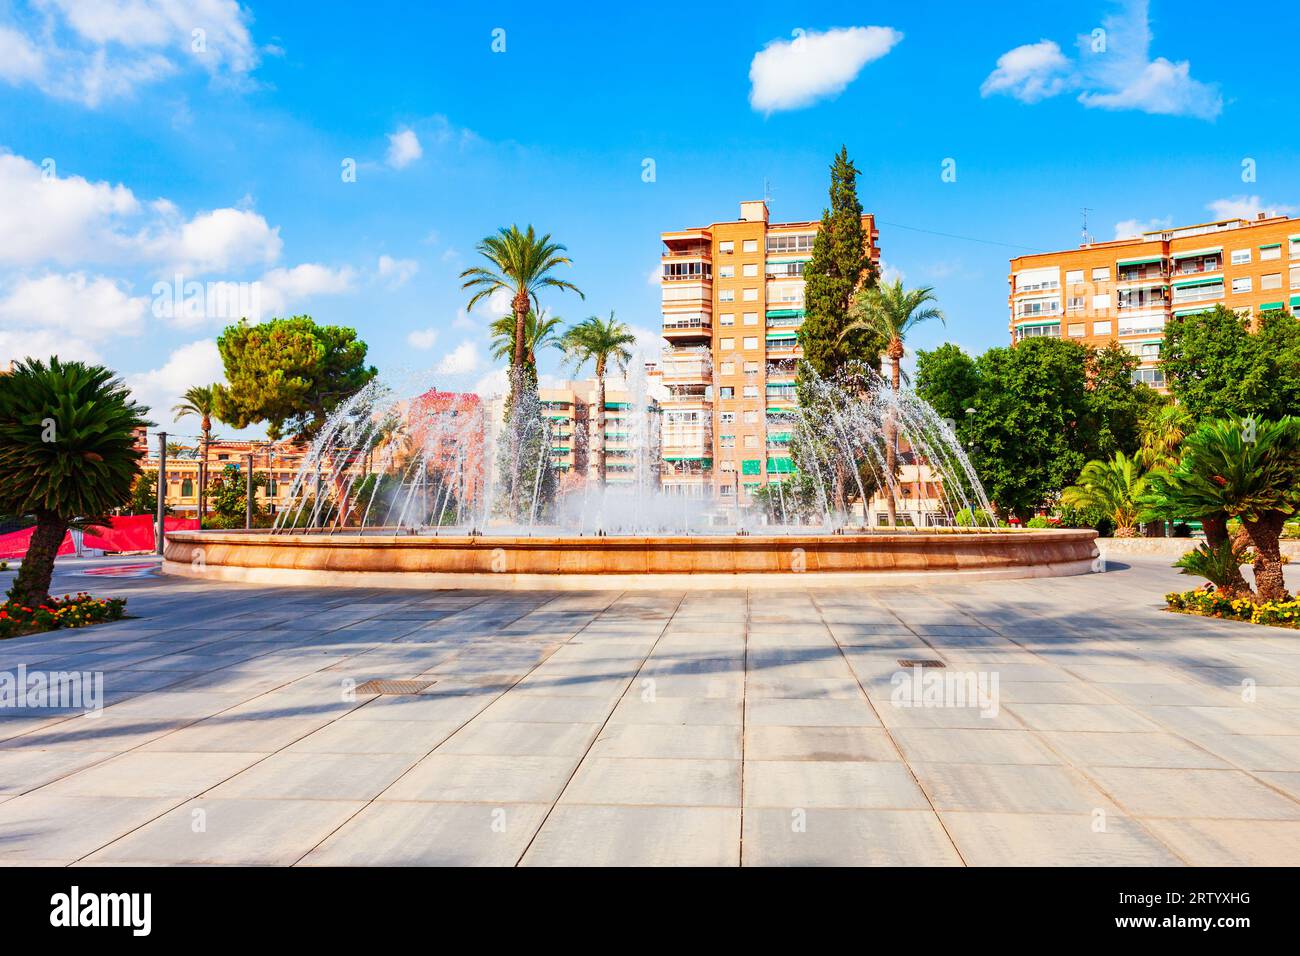 Piazza circolare o Plaza Circular a Murcia. Murcia è una città della Spagna sudorientale. Foto Stock